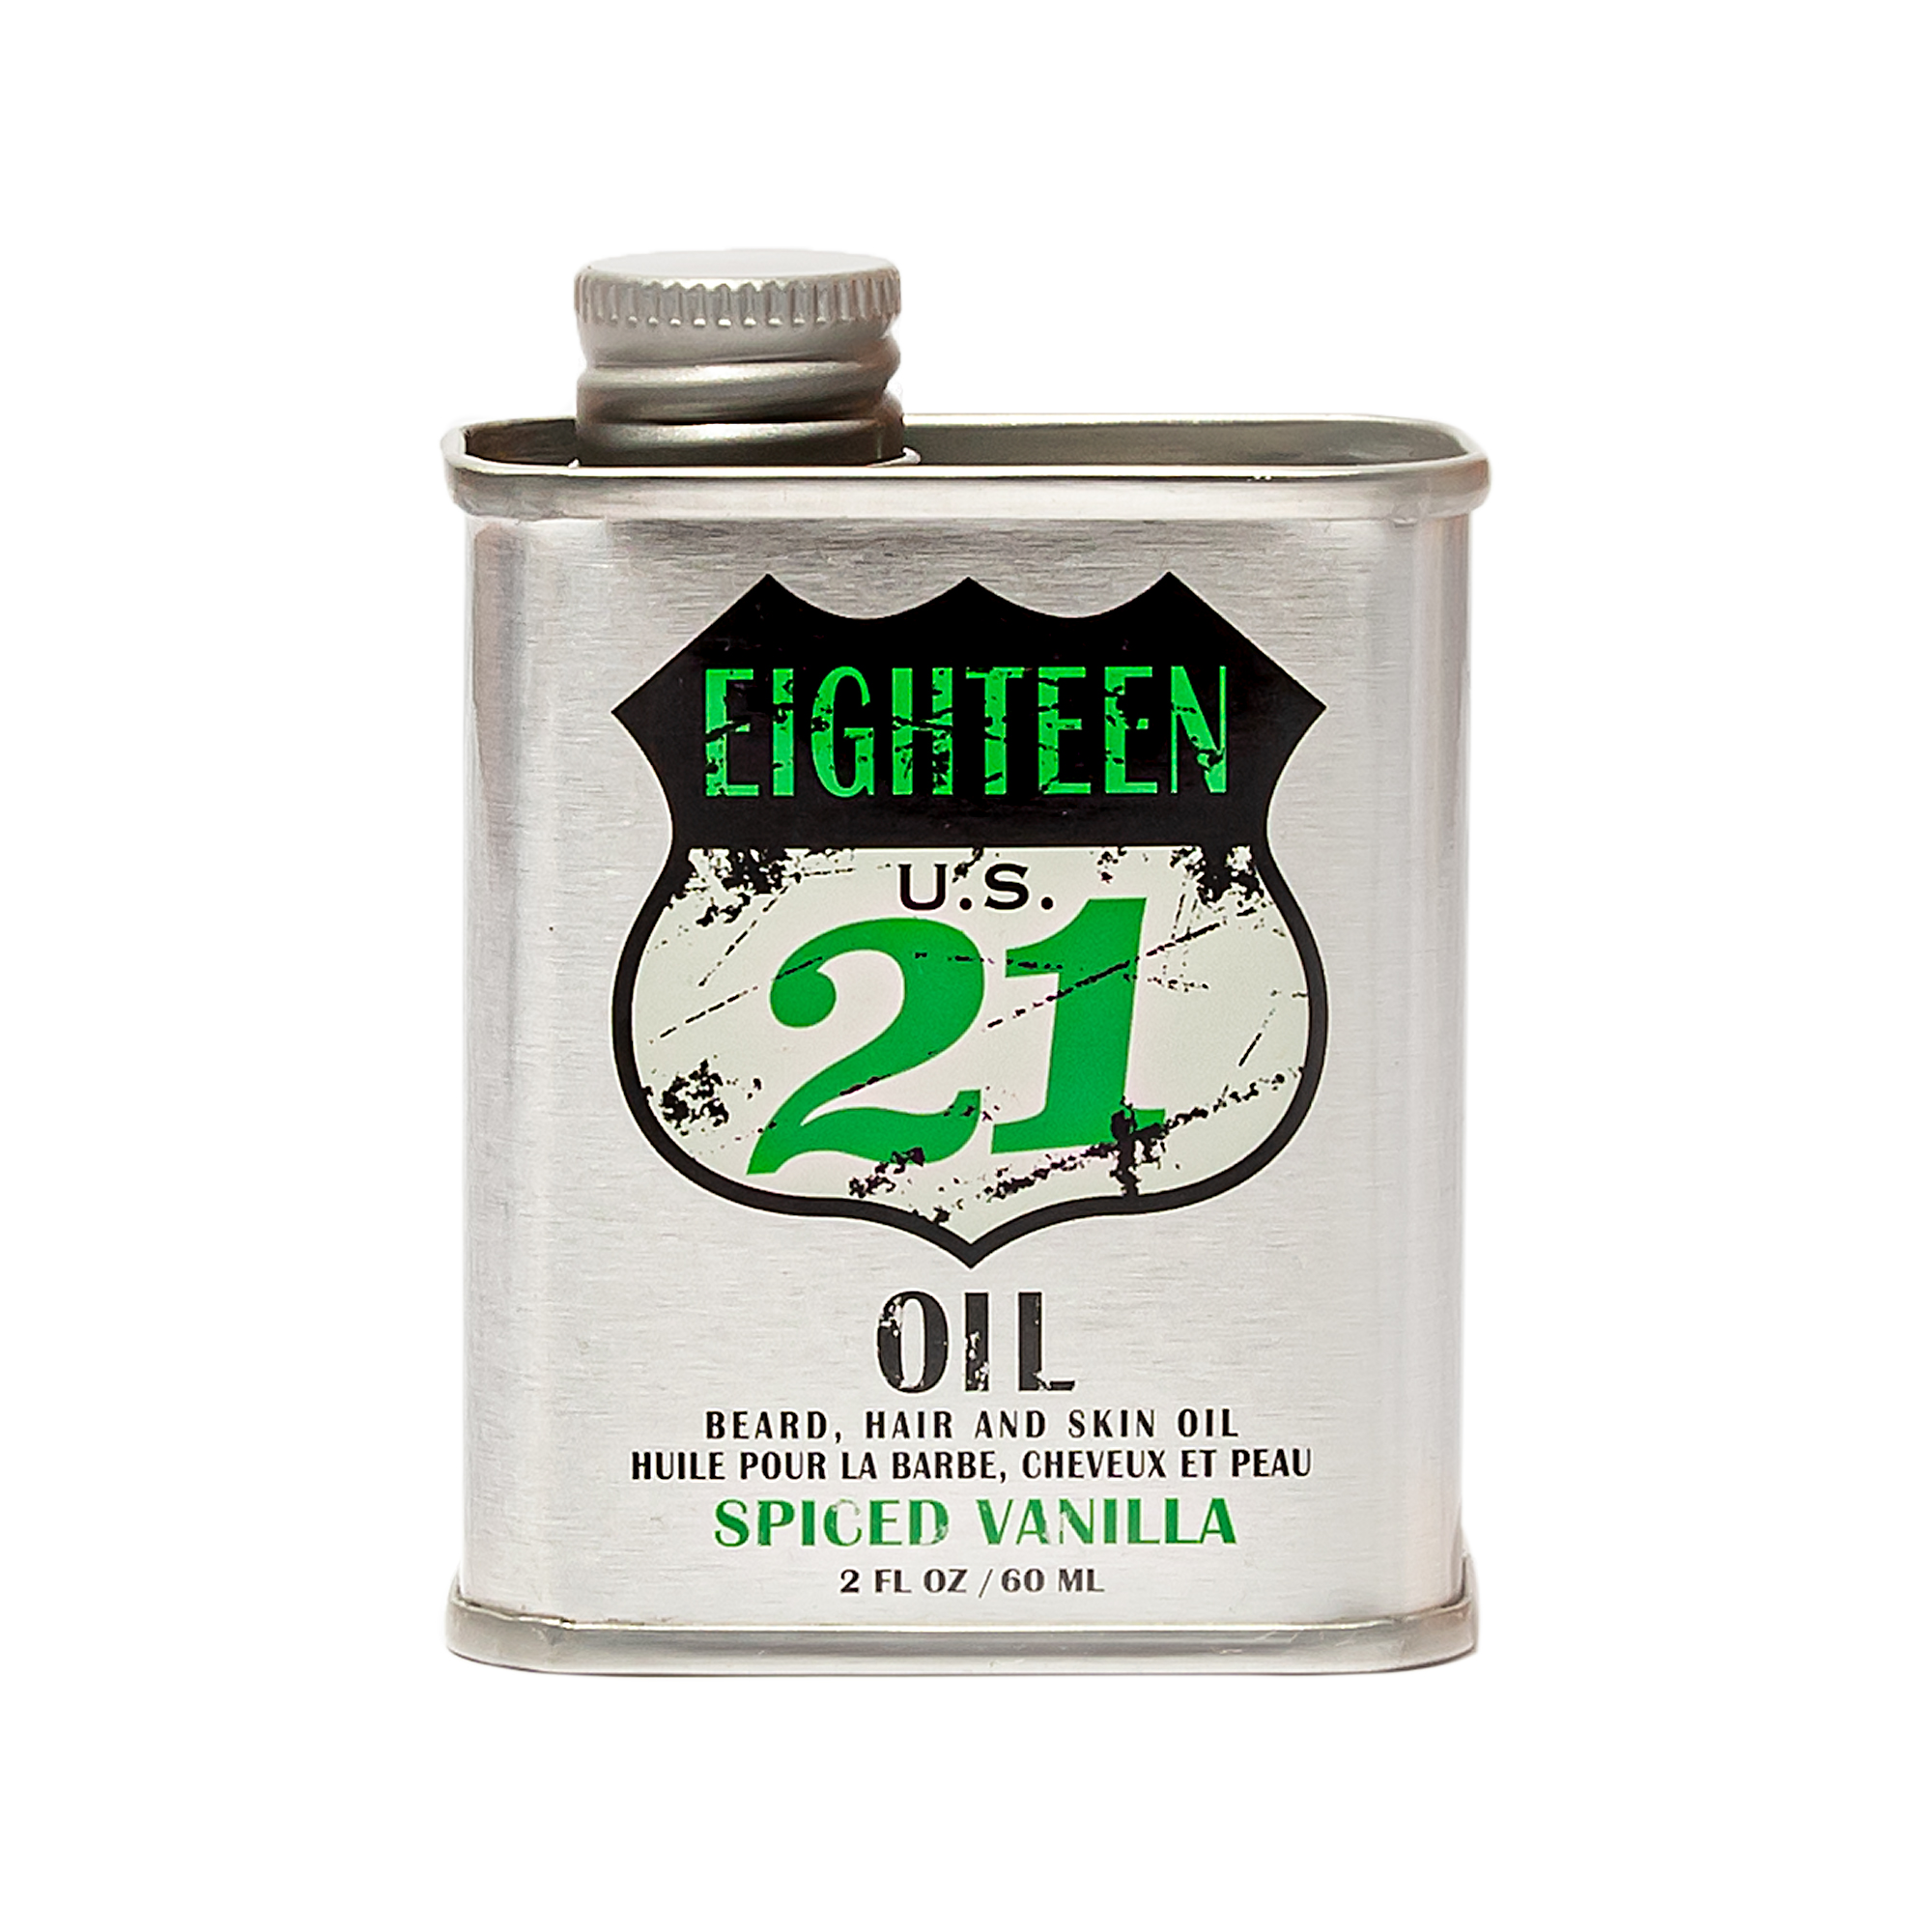 18.21 Man Made Spiced Vanilla Oil